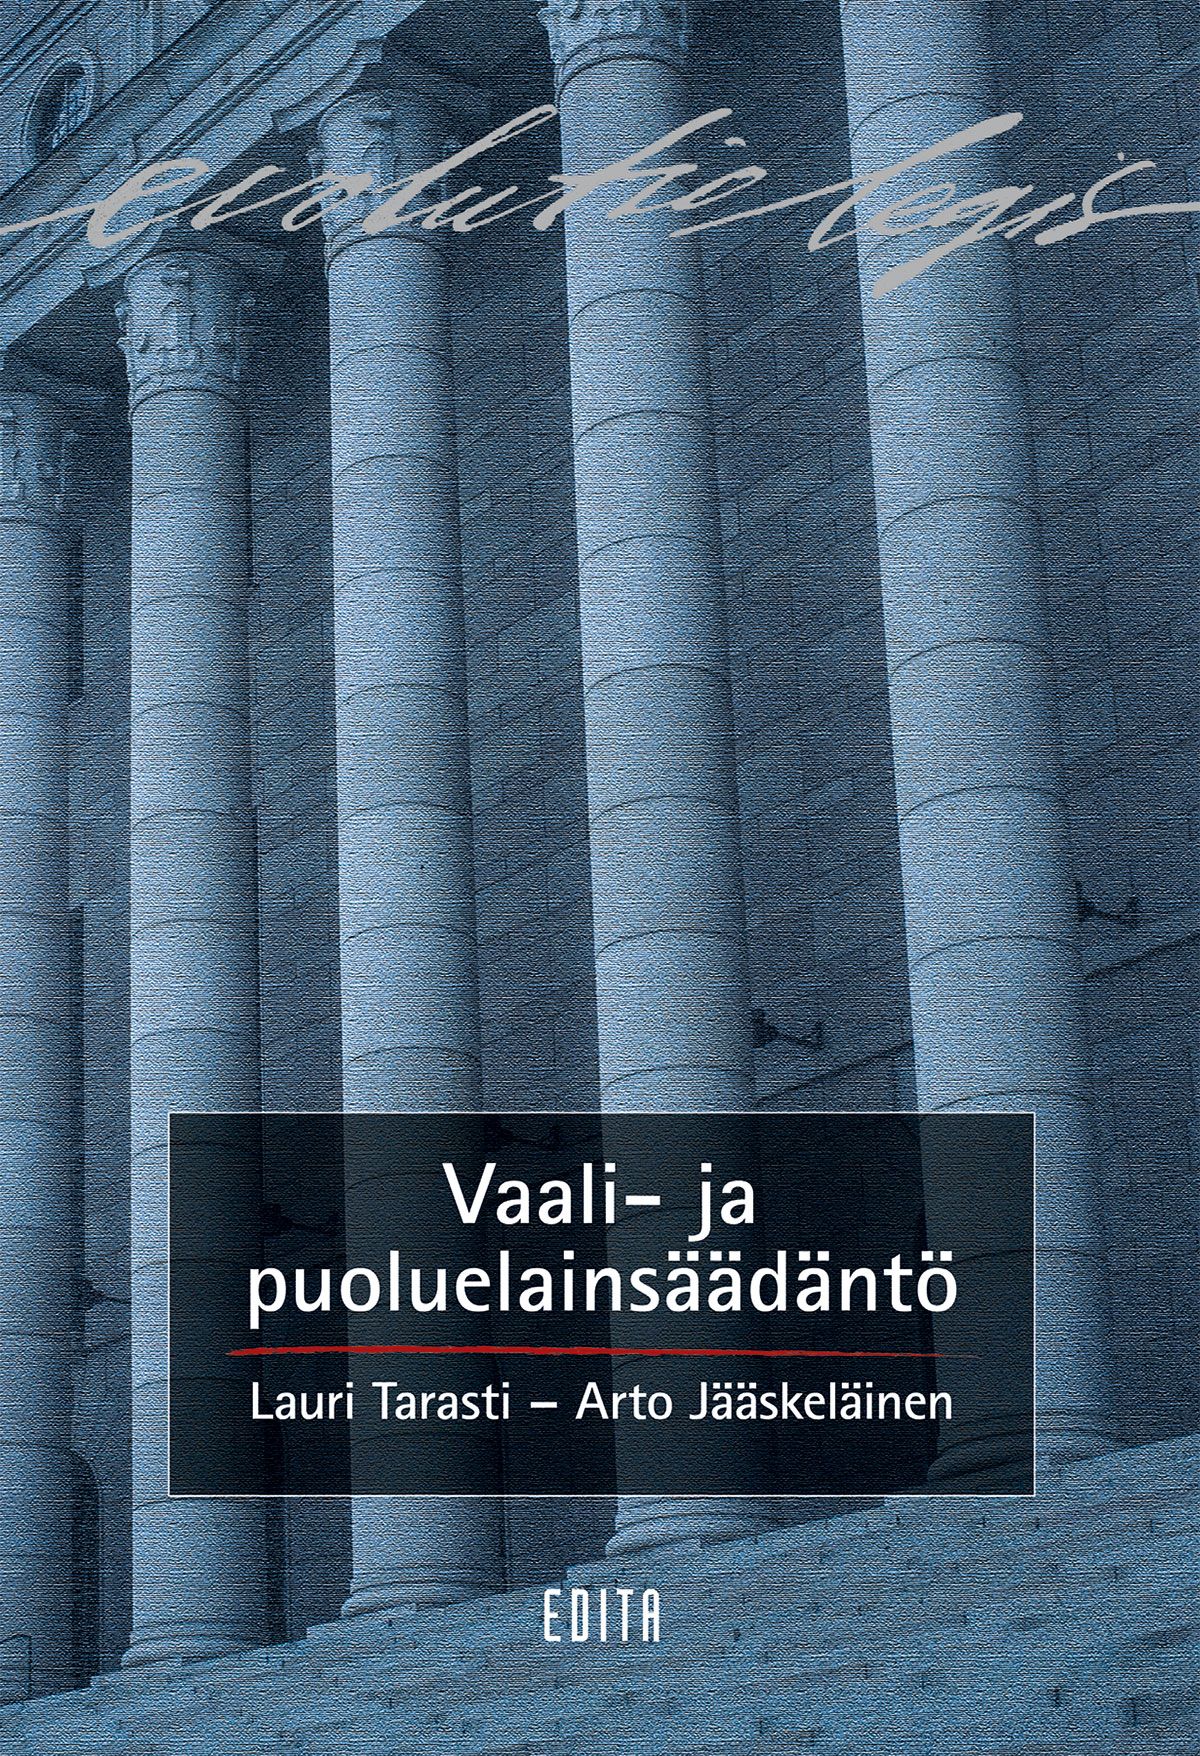 Lauri Tarasti & Arto Jääskeläinen : Vaali- ja puoluelainsäädäntö